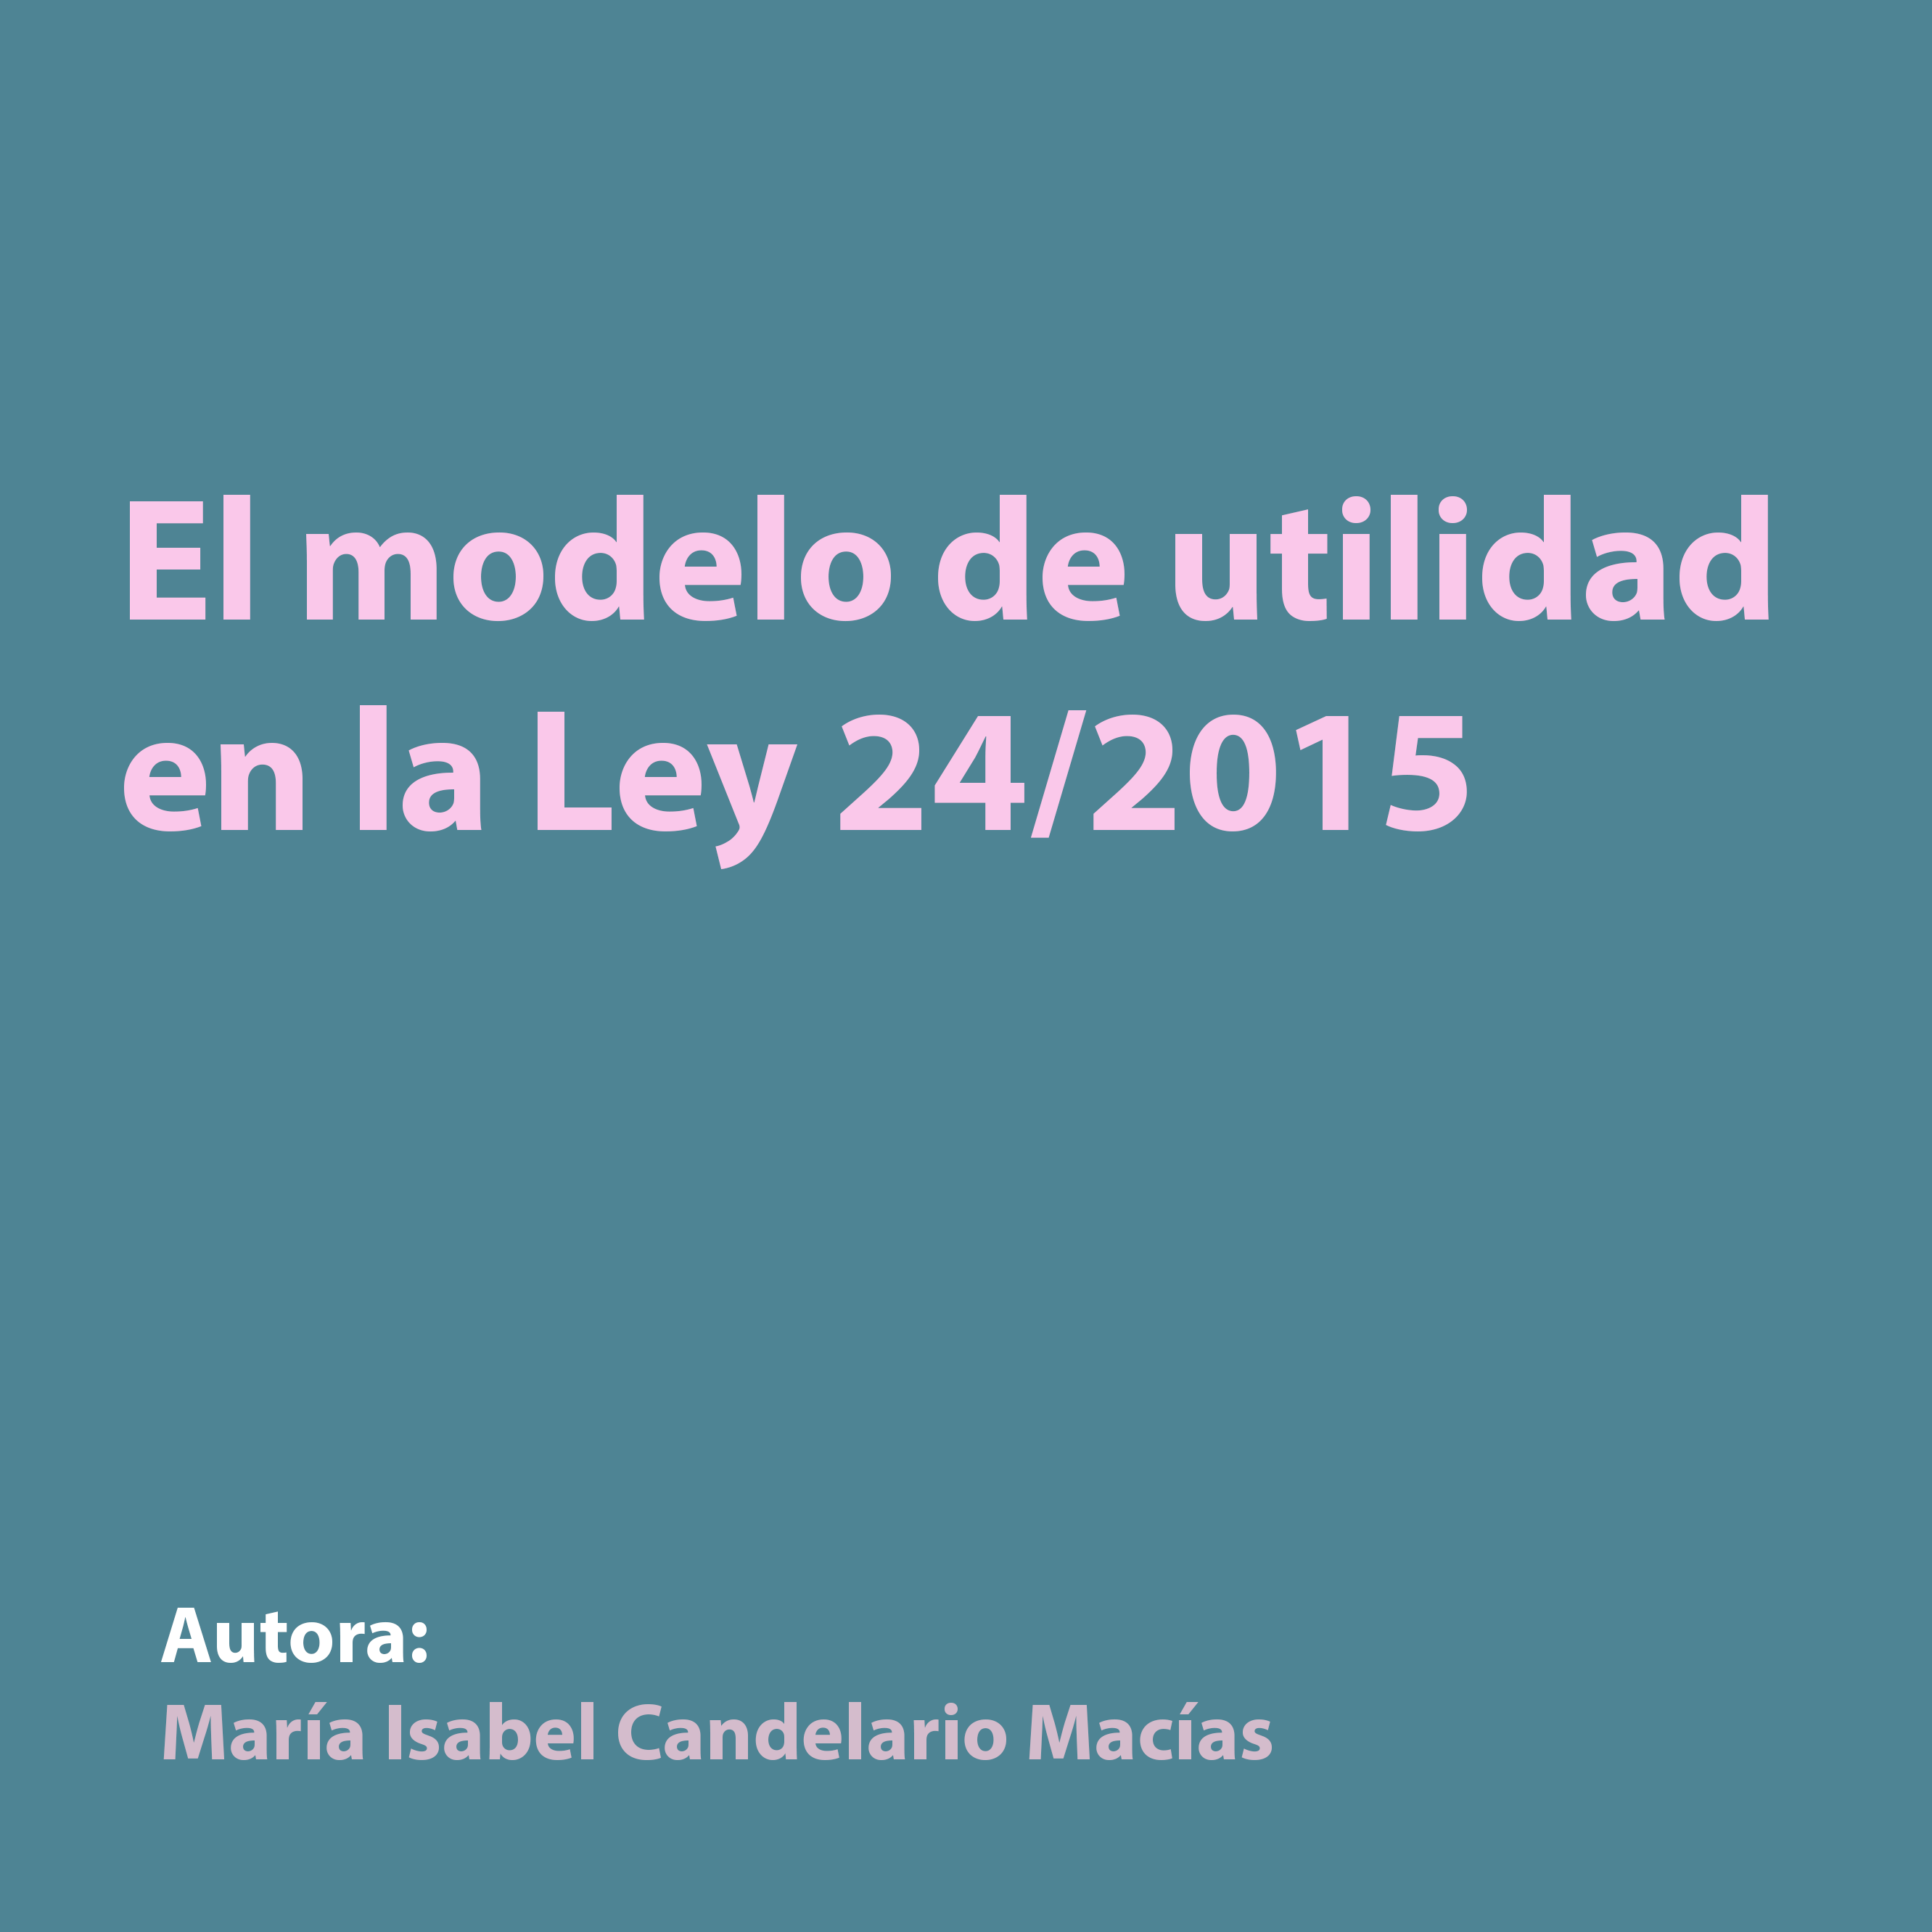 El modelo de utilidad en la Ley 24/2015